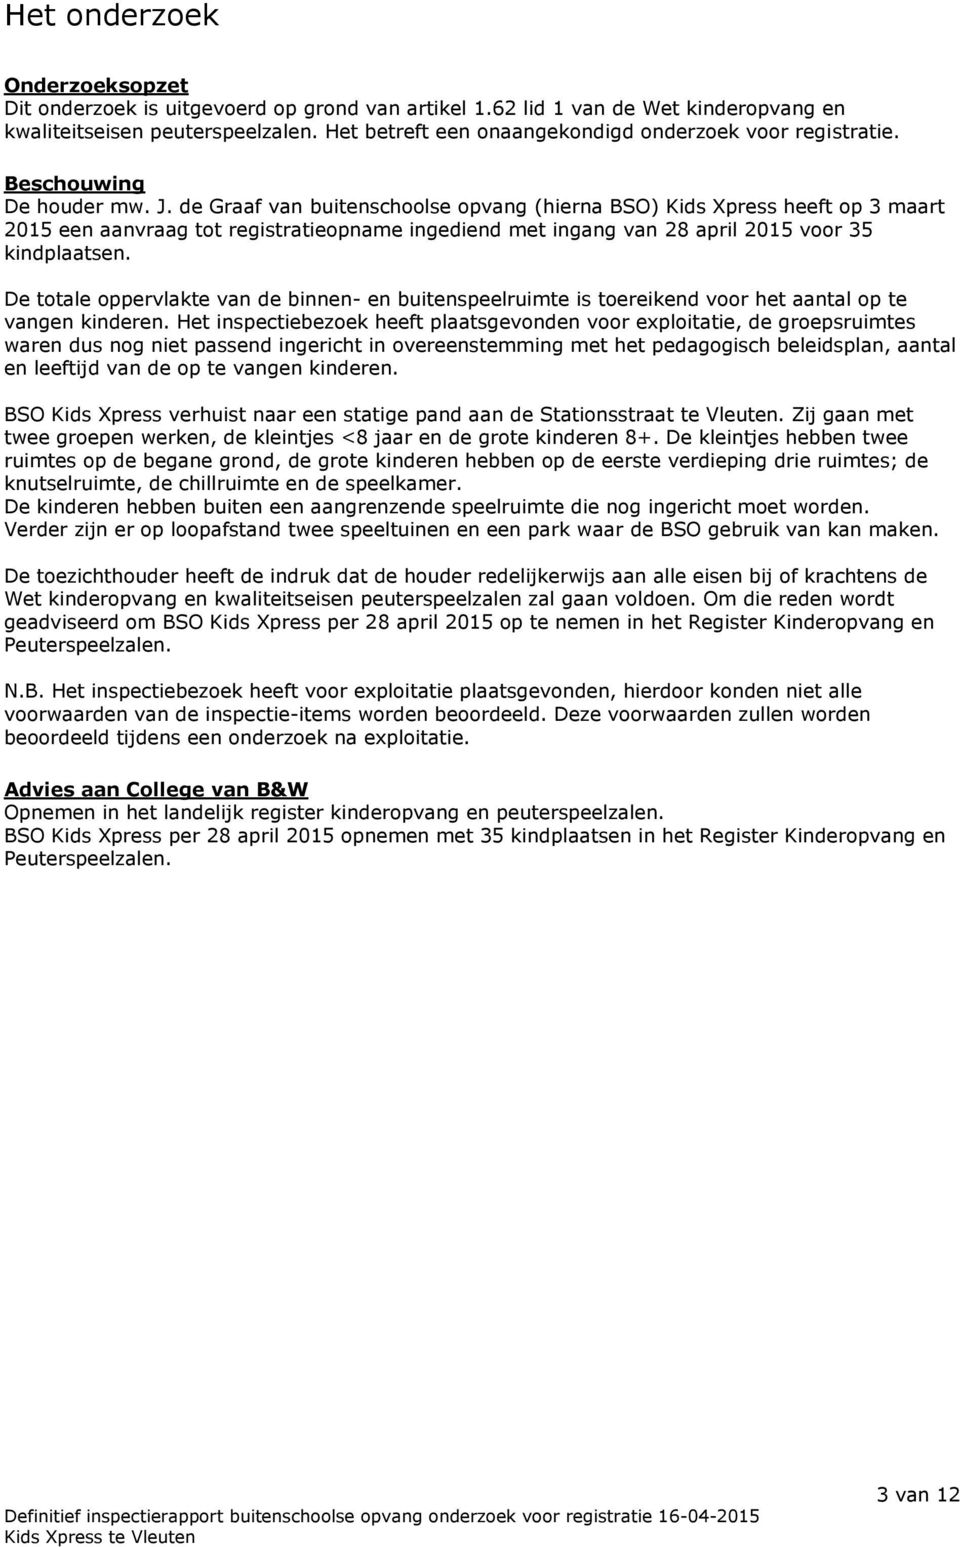 de Graaf van buitenschoolse opvang (hierna BSO) Kids Xpress heeft op 3 maart 2015 een aanvraag tot registratieopname ingediend met ingang van 28 april 2015 voor 35 kindplaatsen.